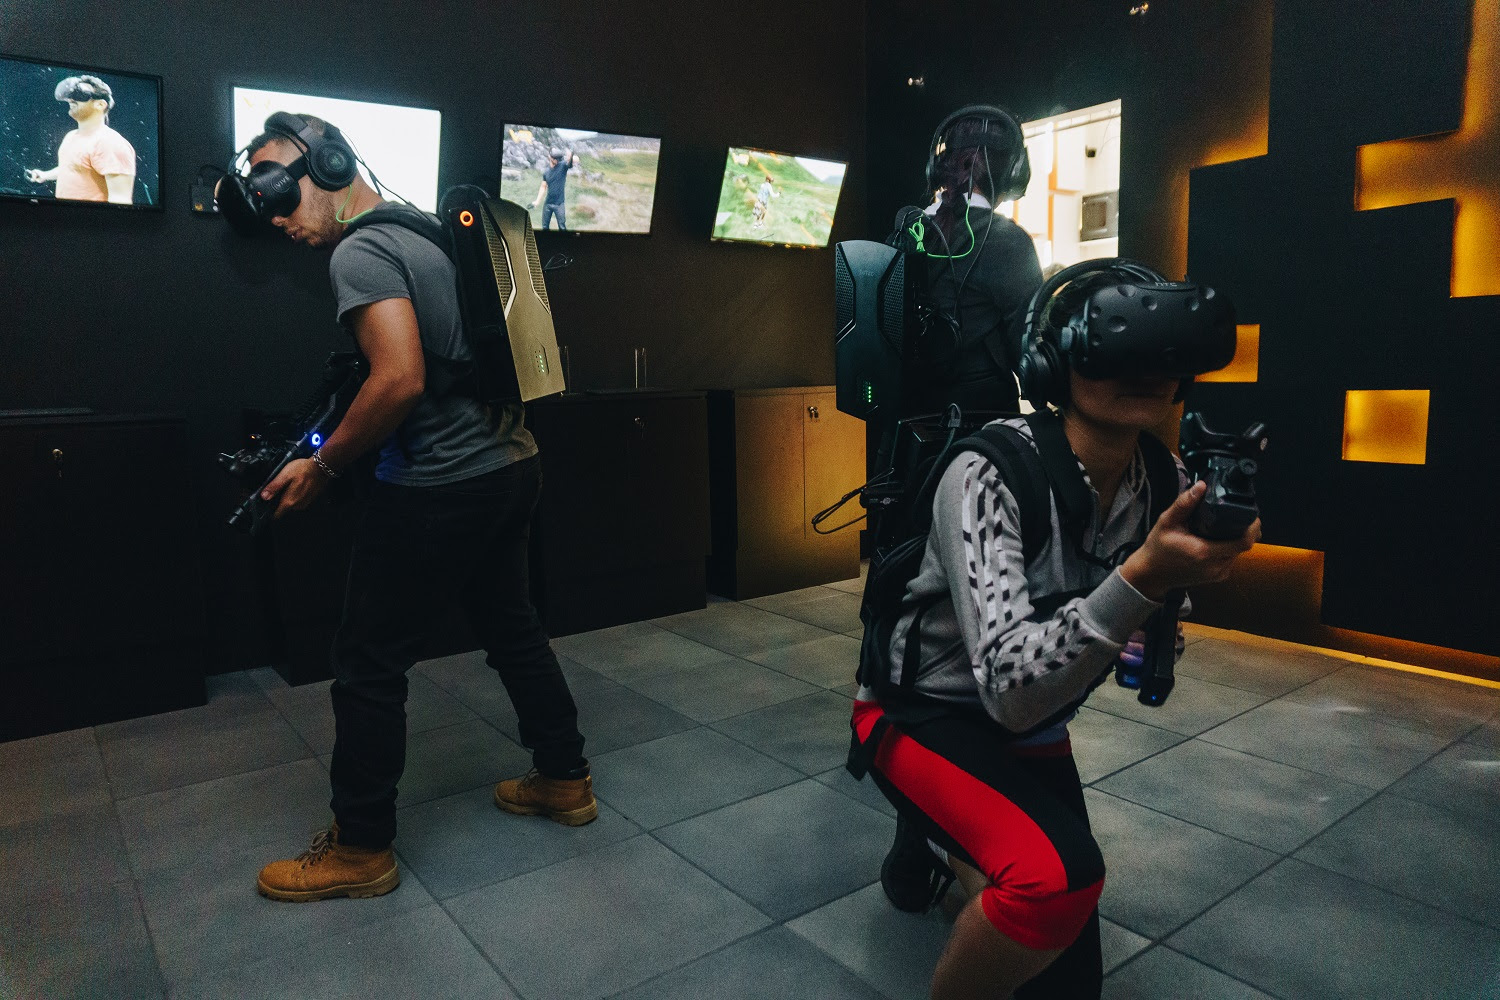 VR Gamer